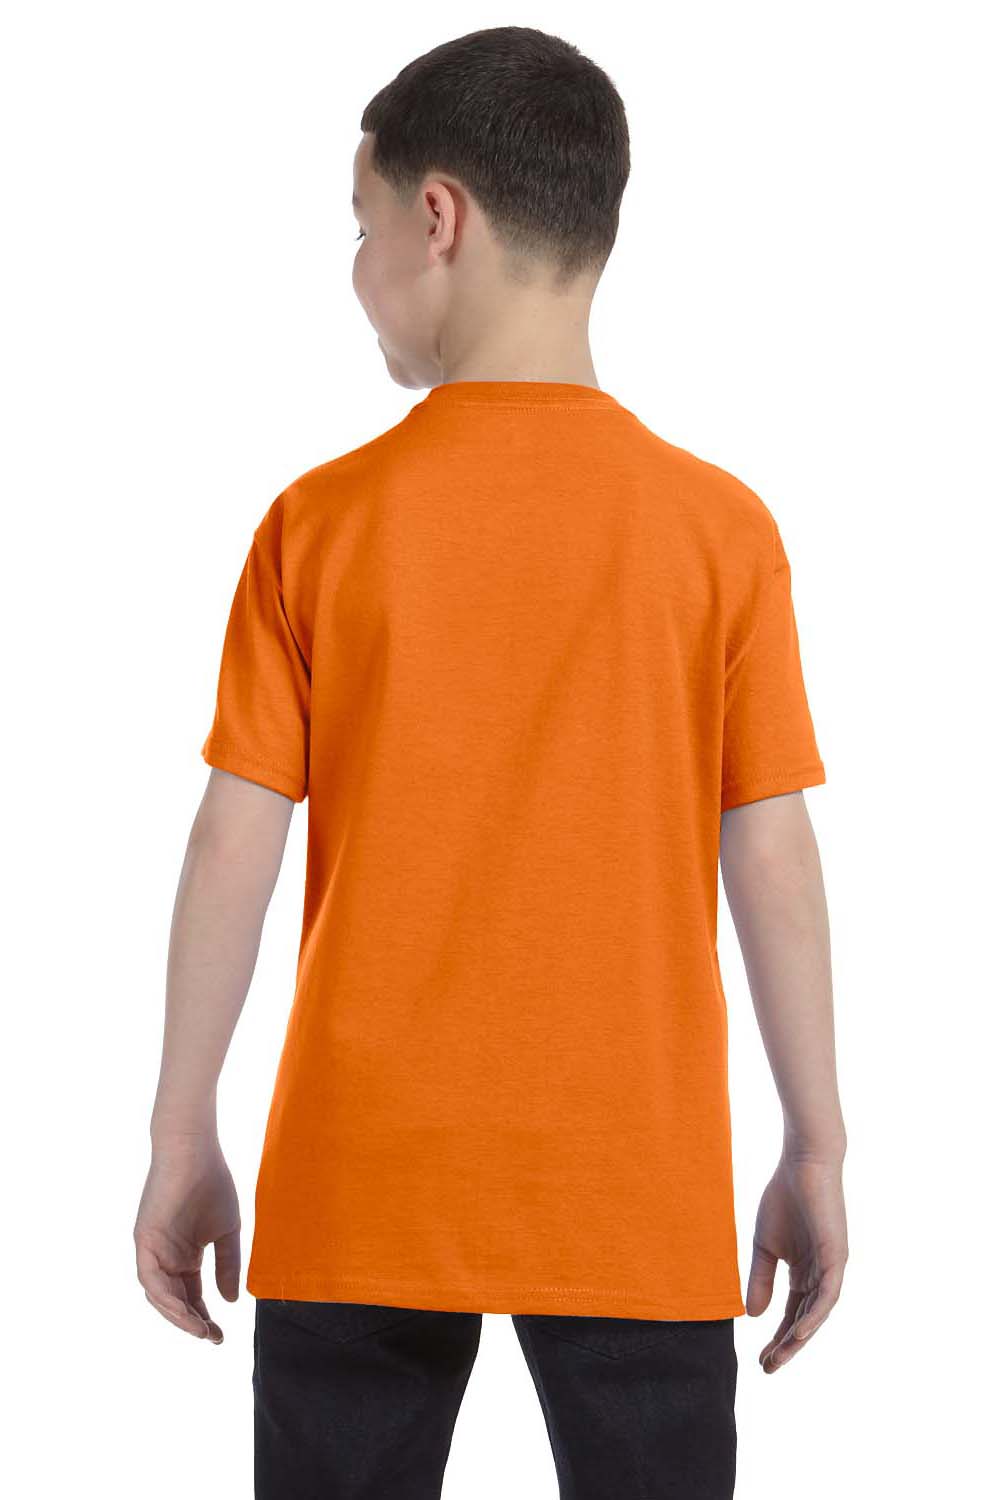 Hanes 54500 Youth ComfortSoft Short Sleeve Crewneck T-Shirt Orange Back